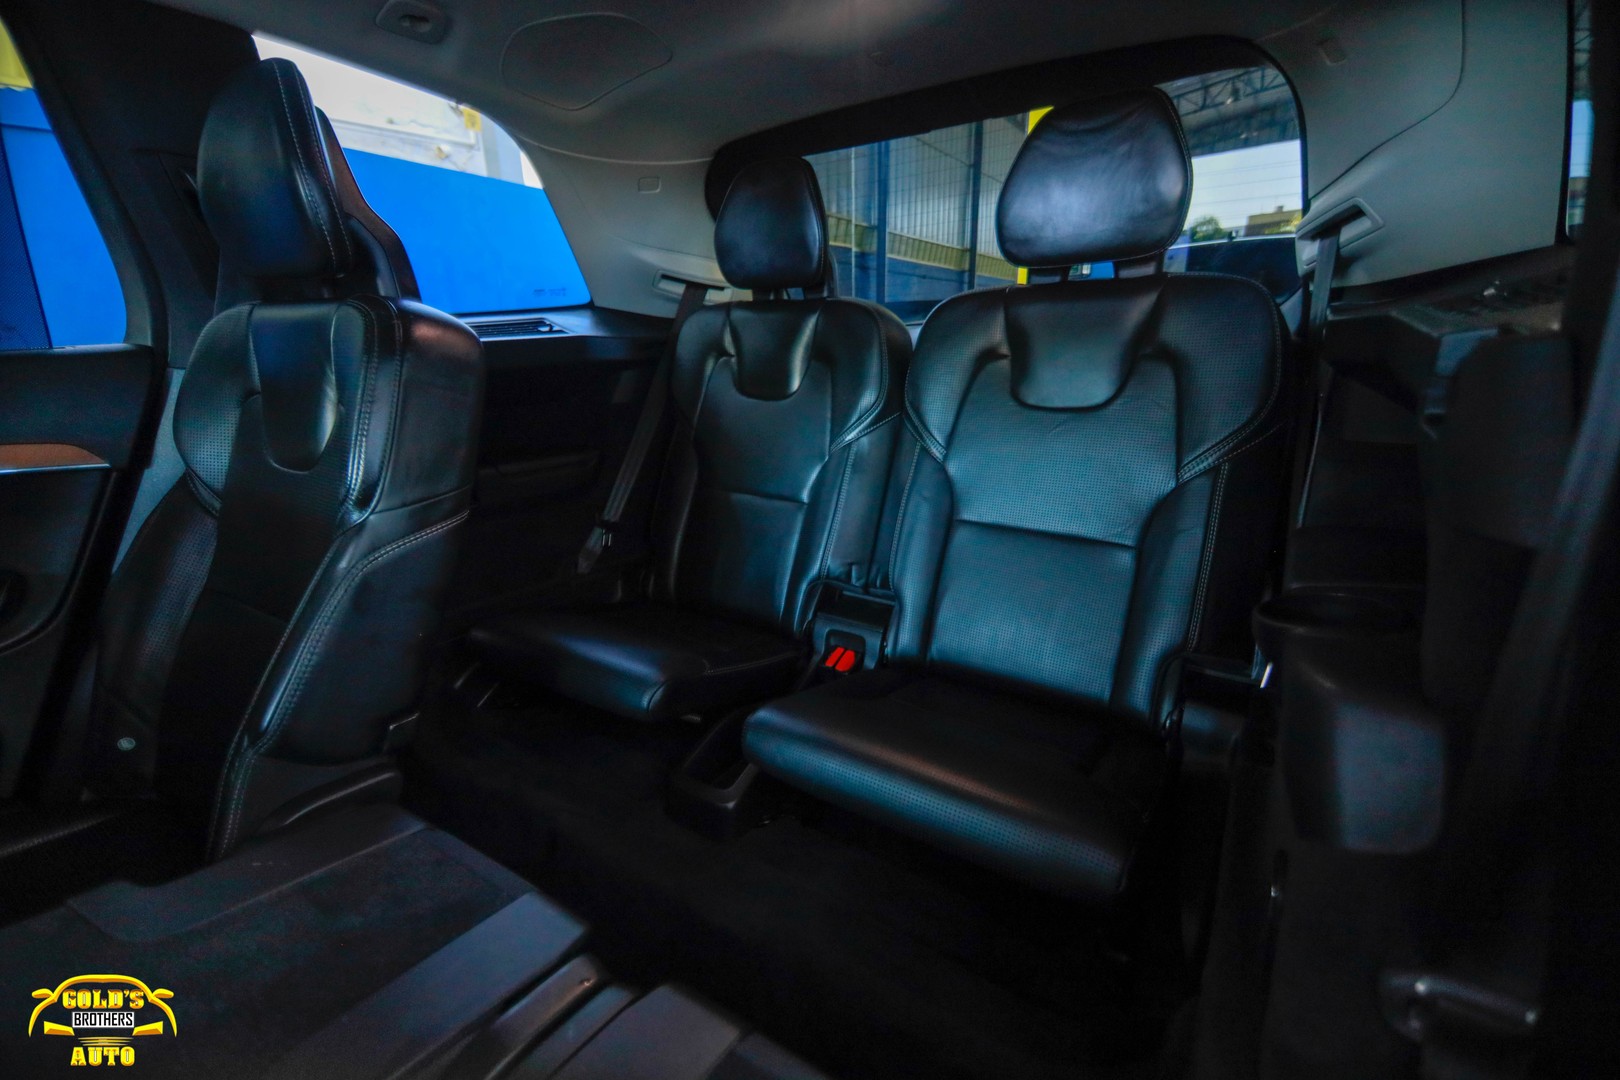 jeepetas y camionetas - Volvo XC90 T6 Inscription 2018 Clean Carfax Recien Importada 7